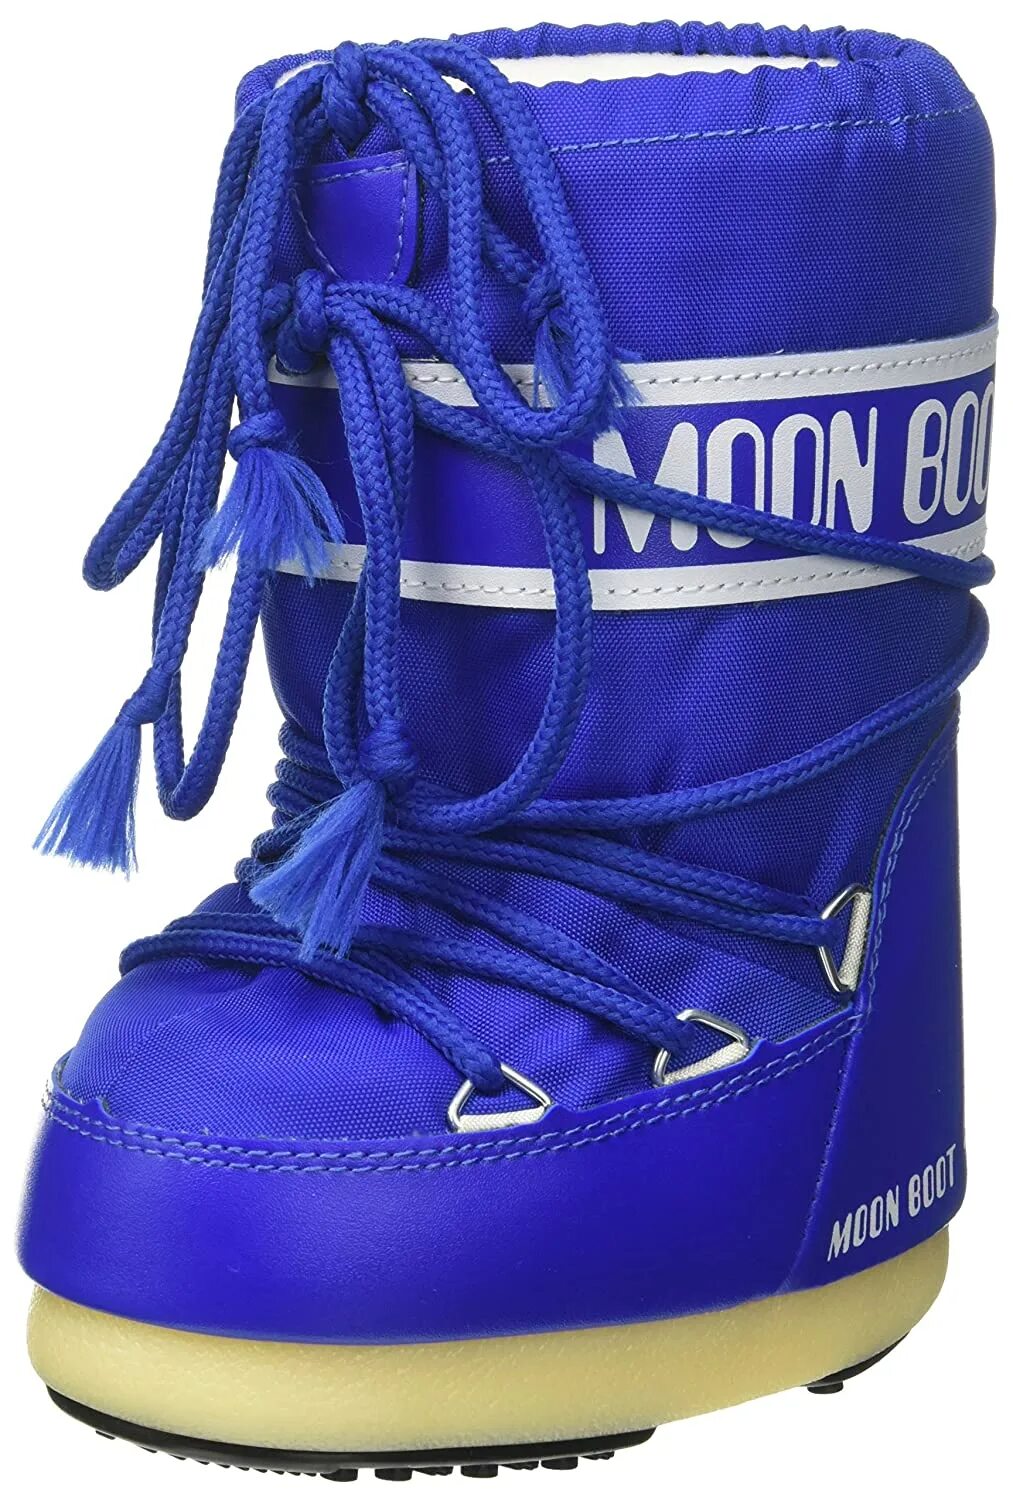 Moon sports. Ботинки Moon Boot nylon. Tecnica Moon Boot nylon ботинки. Moon Boot женские. Moon Boot синие.